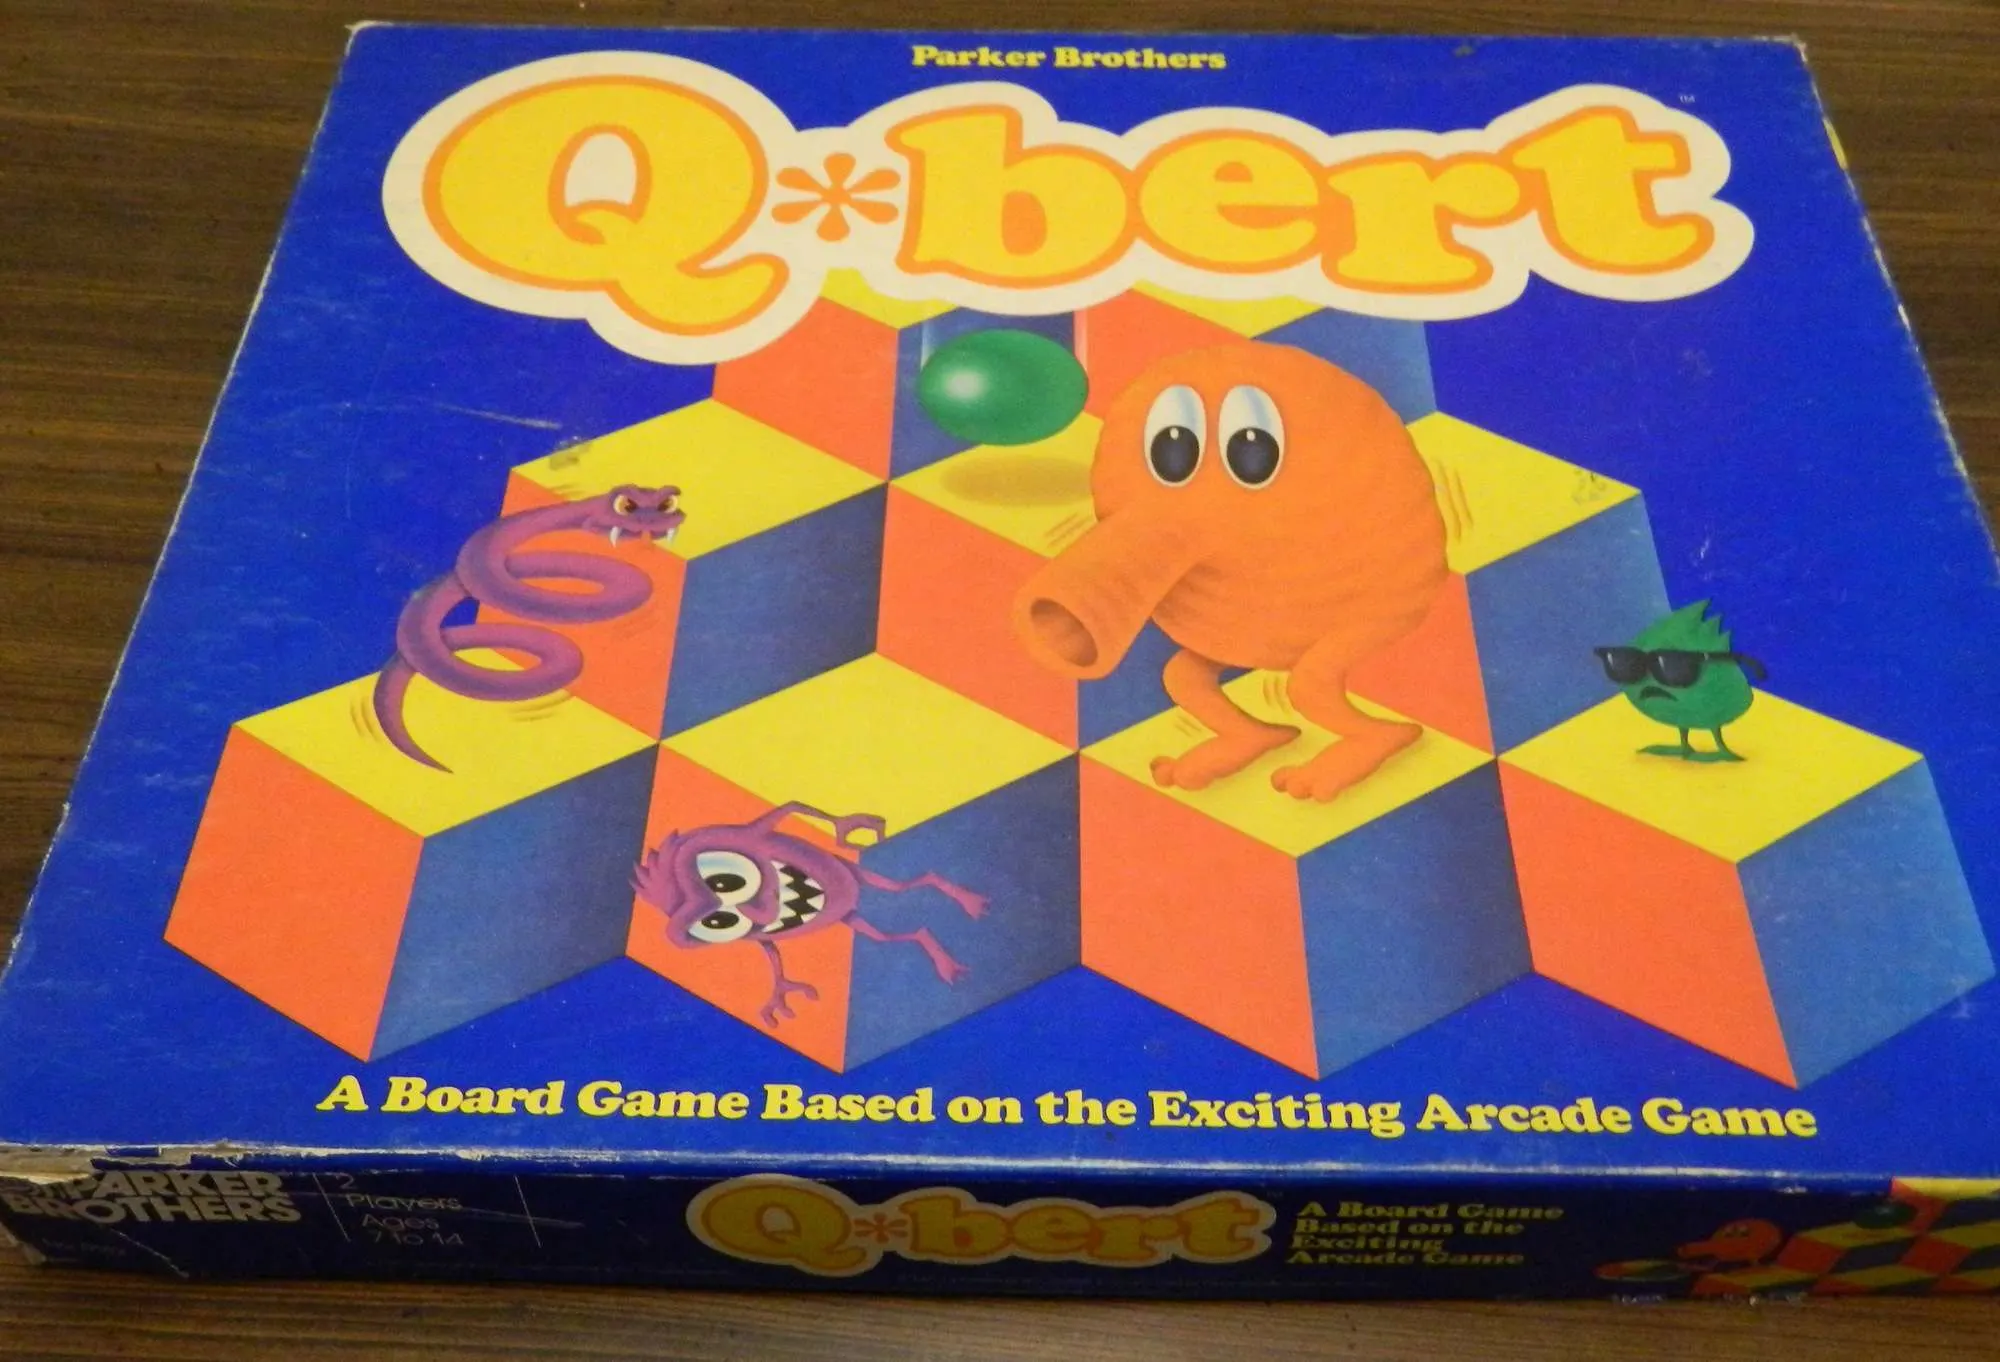 Box for Q*bert Game